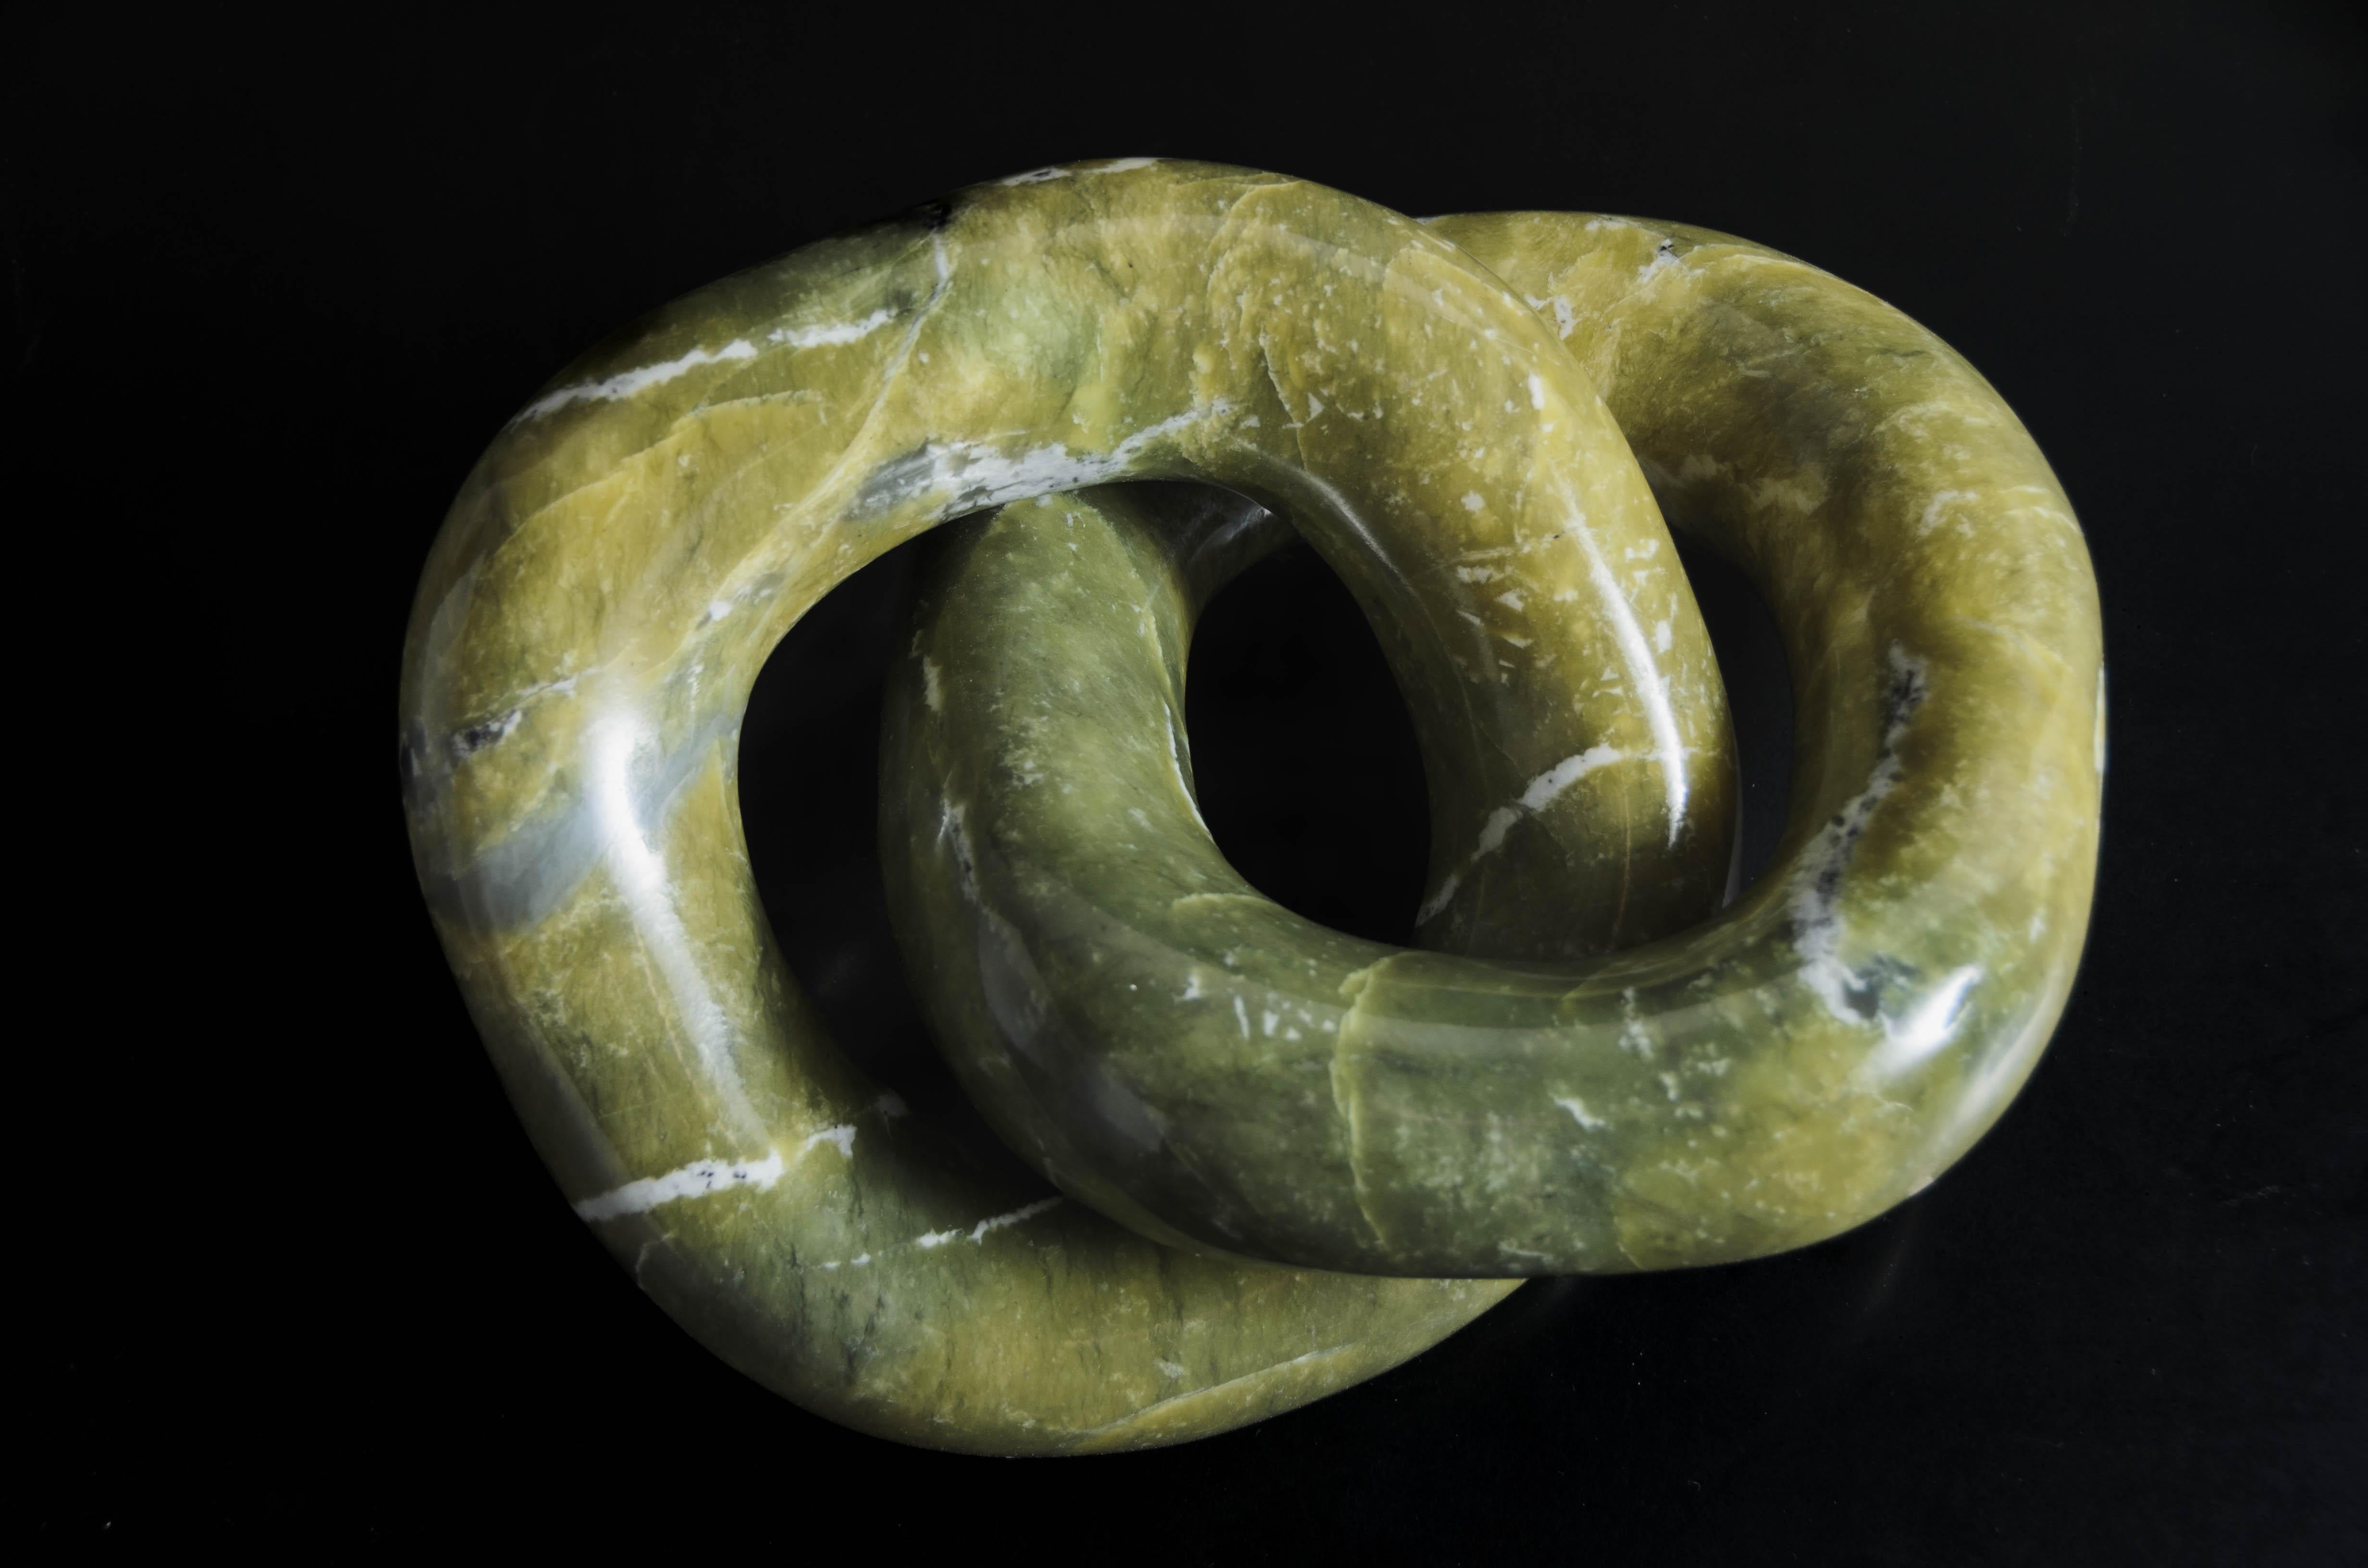 Sculpture à double anneau 
Jade néphrite
Sculpté à la main
Édition limitée
Contemporain
LIEN JADE LABELLISÉ : JL09 

Veuillez noter que les formes et les couleurs de chaque jade varient, veuillez vous renseigner pour plus d'informations.